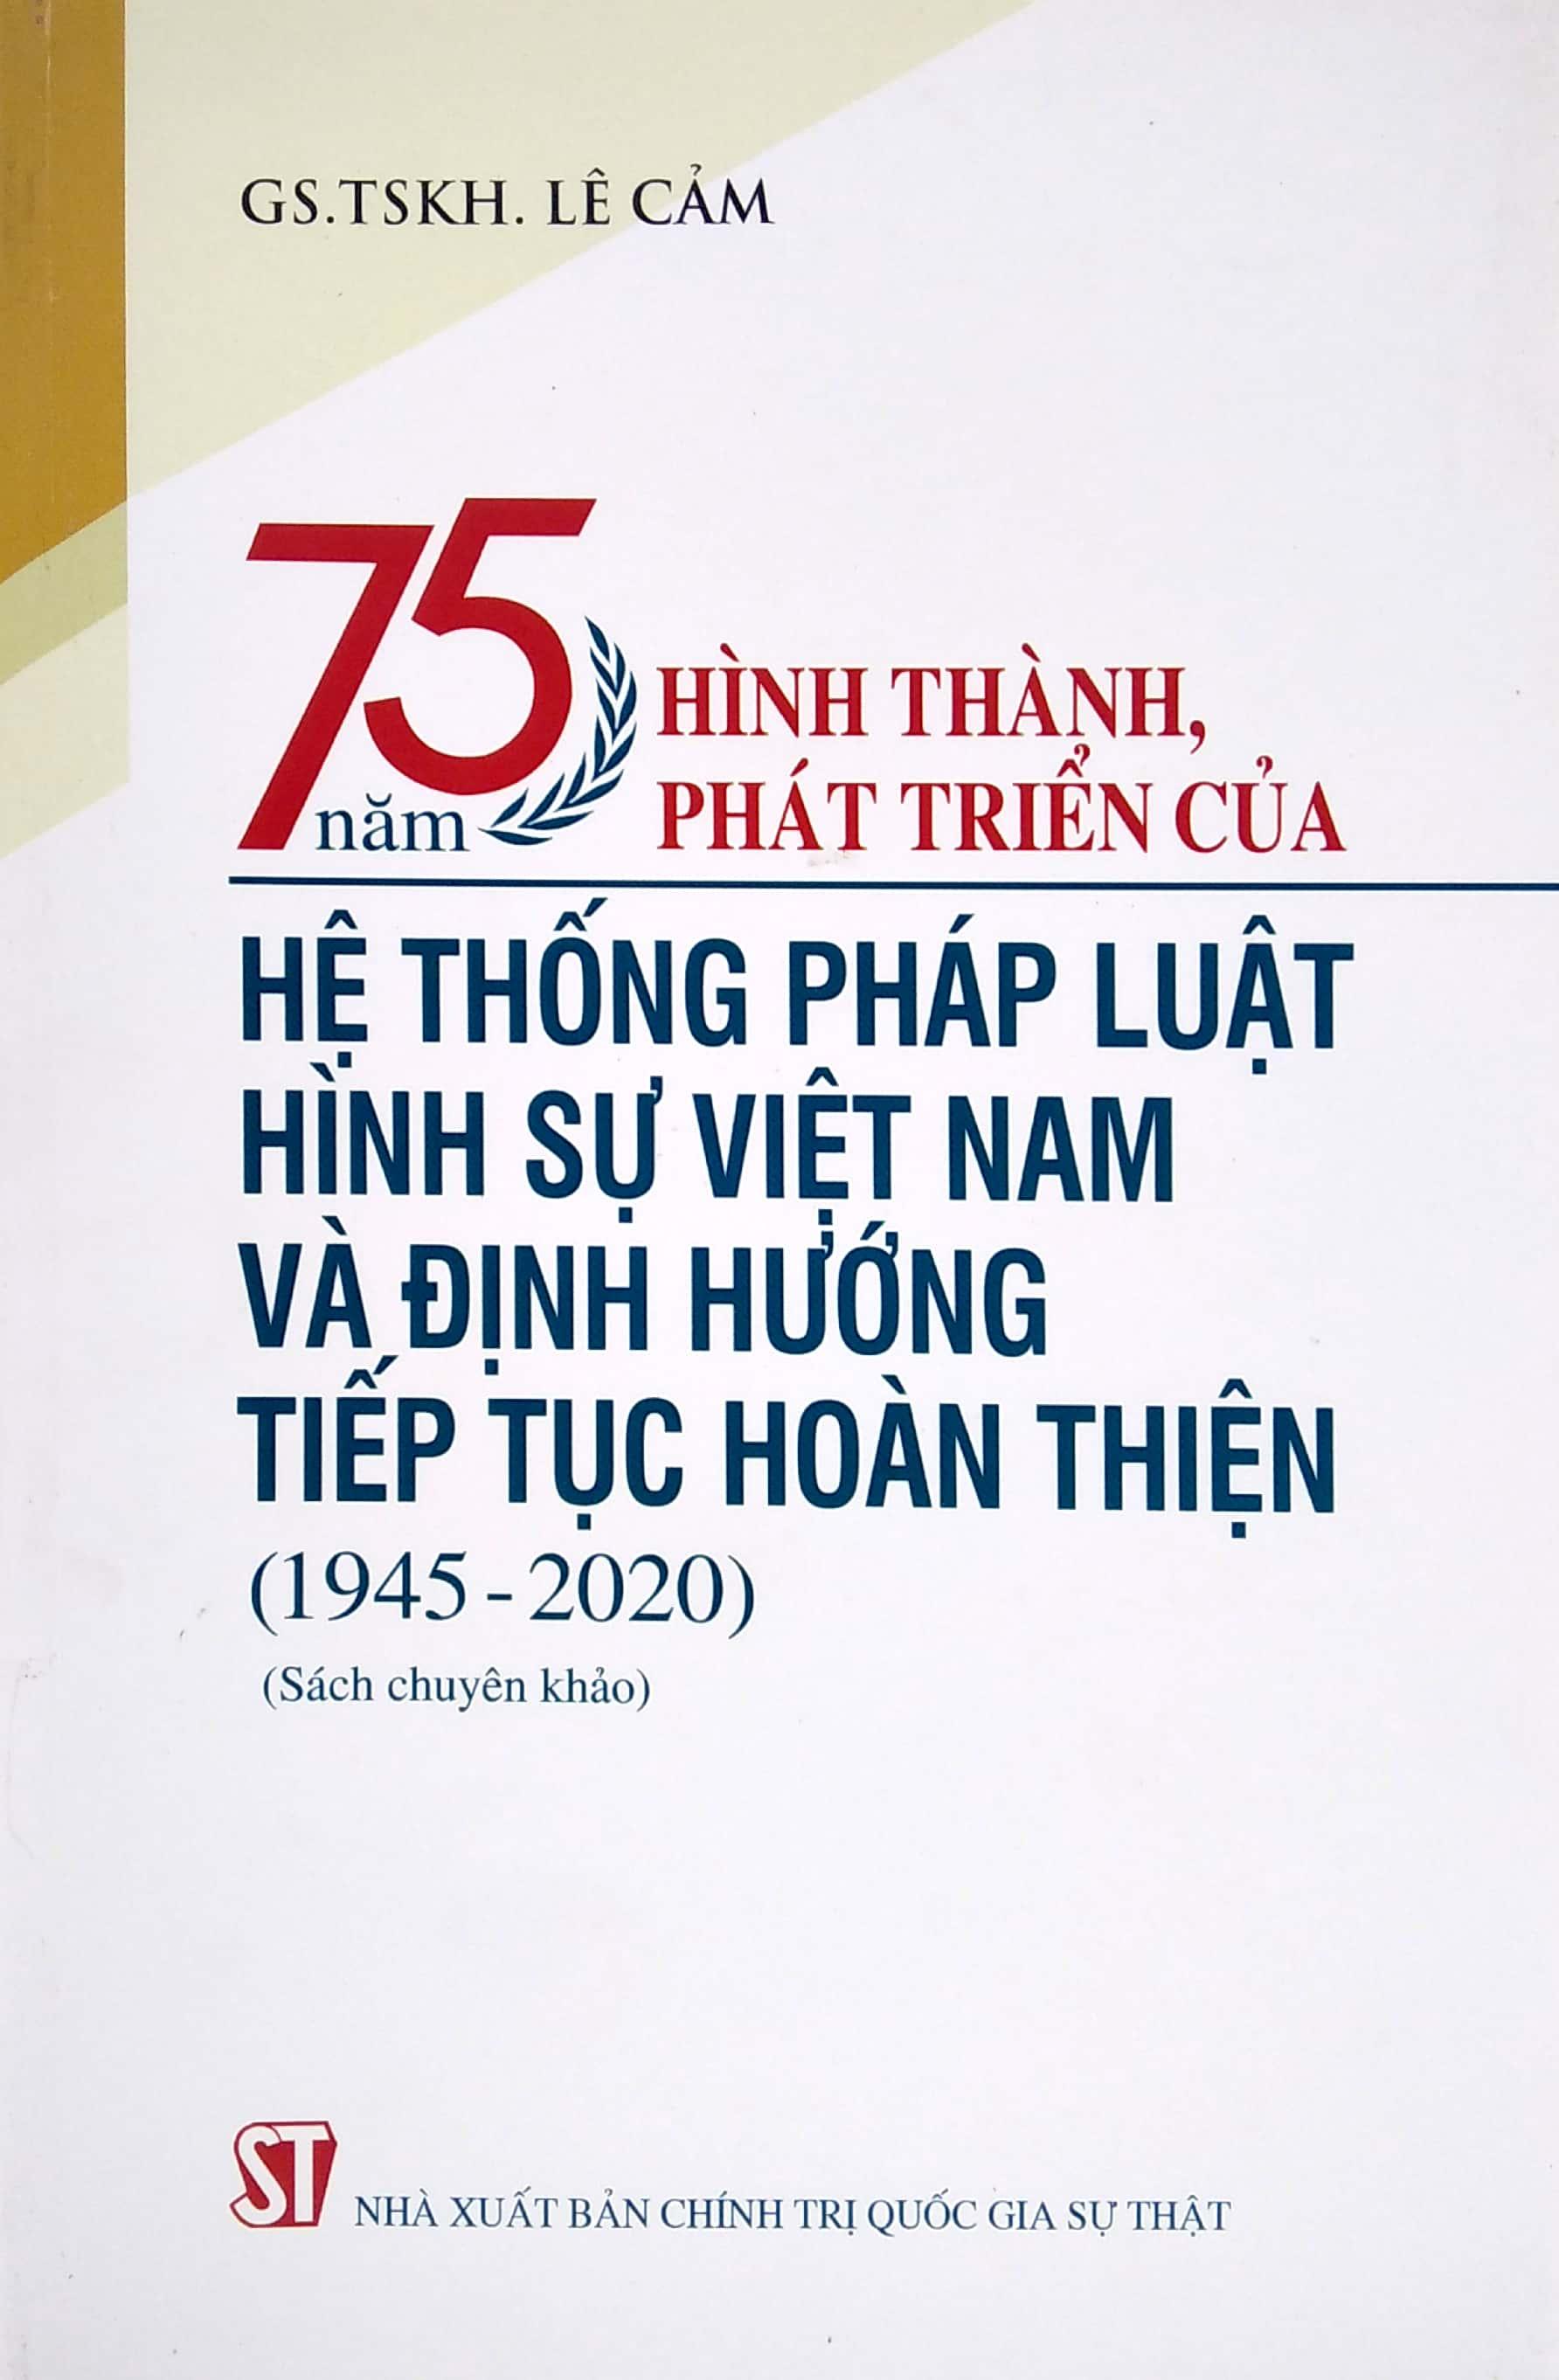 75 Năm Hình Thành, Phát Triển Của Hệ Thống Pháp Luật Hình Sự Việt Nam Và Định Hướng Tiếp Tục Hoàn Thiện (1945-2020)